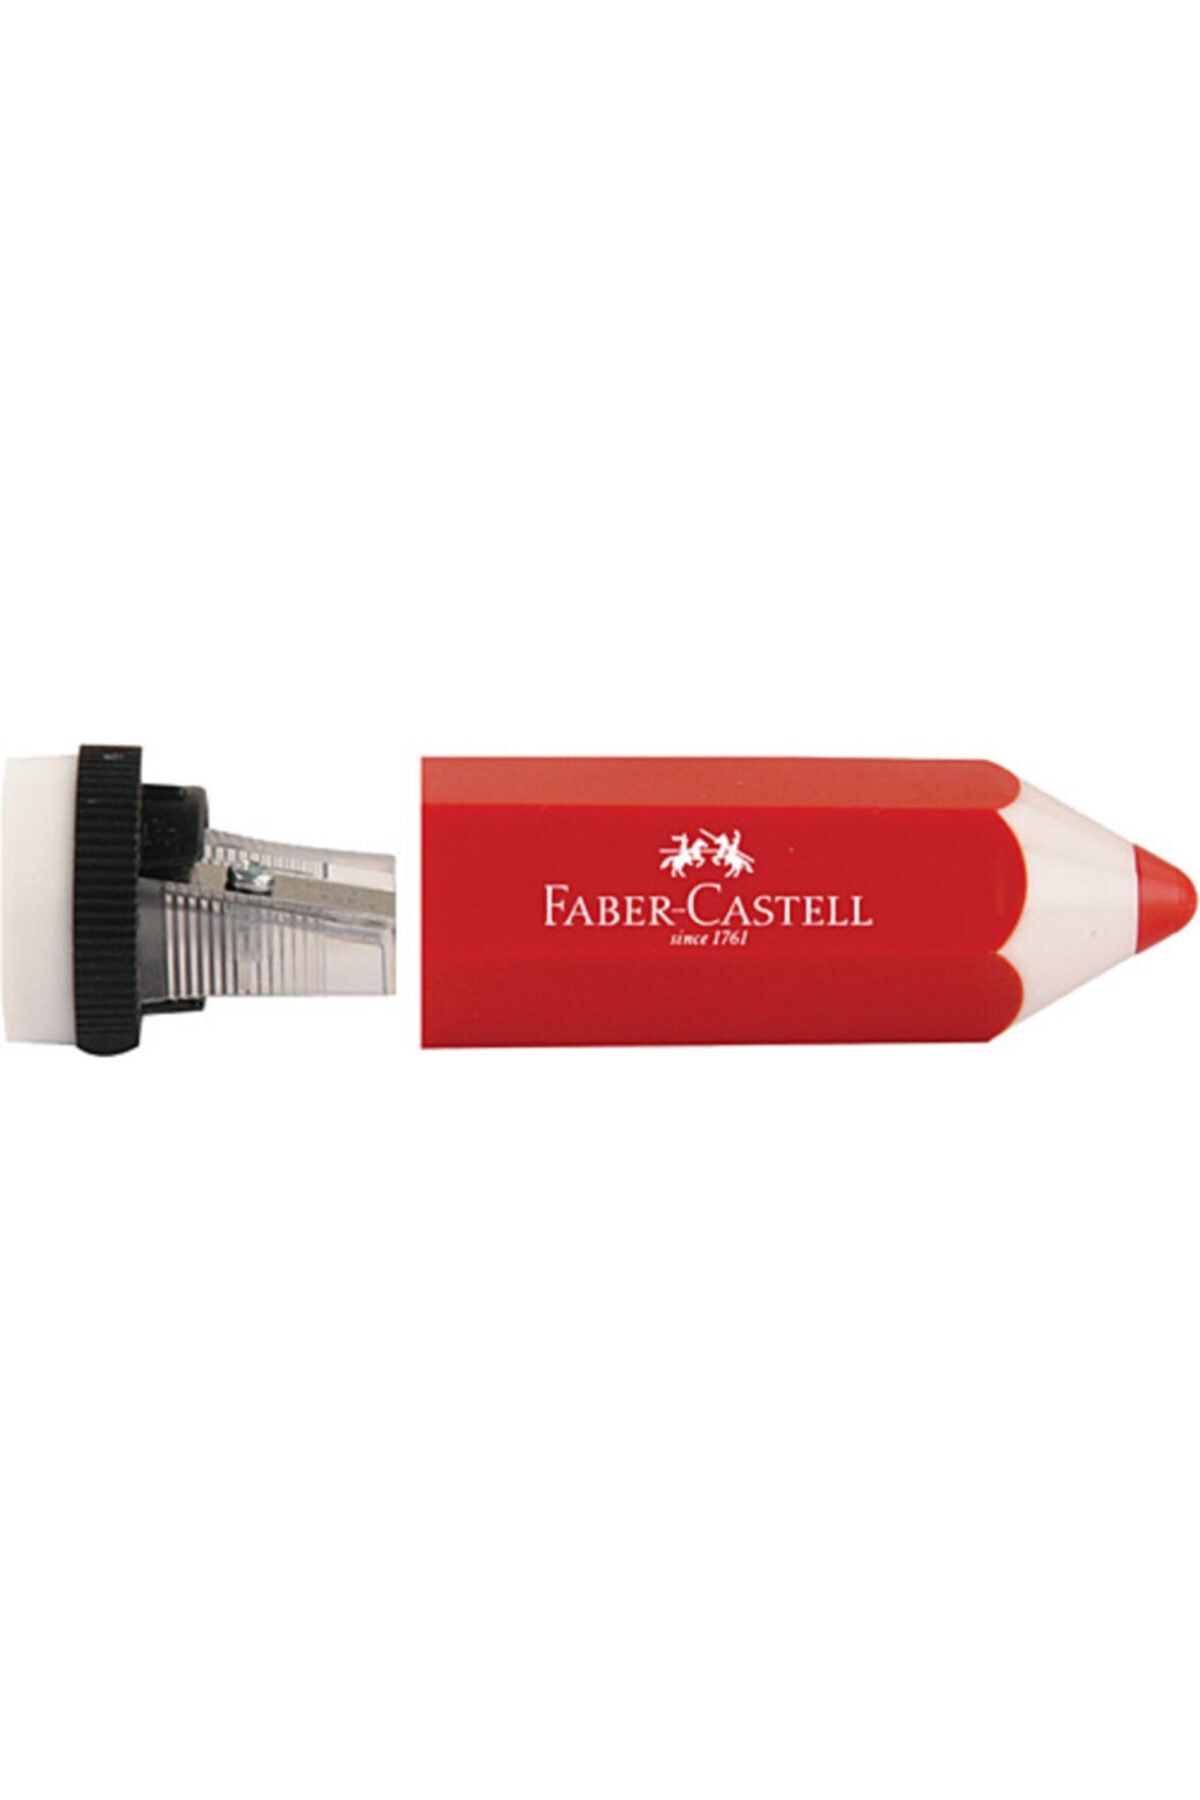 Faber Castell Kalem Şekilli Kalemtraş Kırmızı